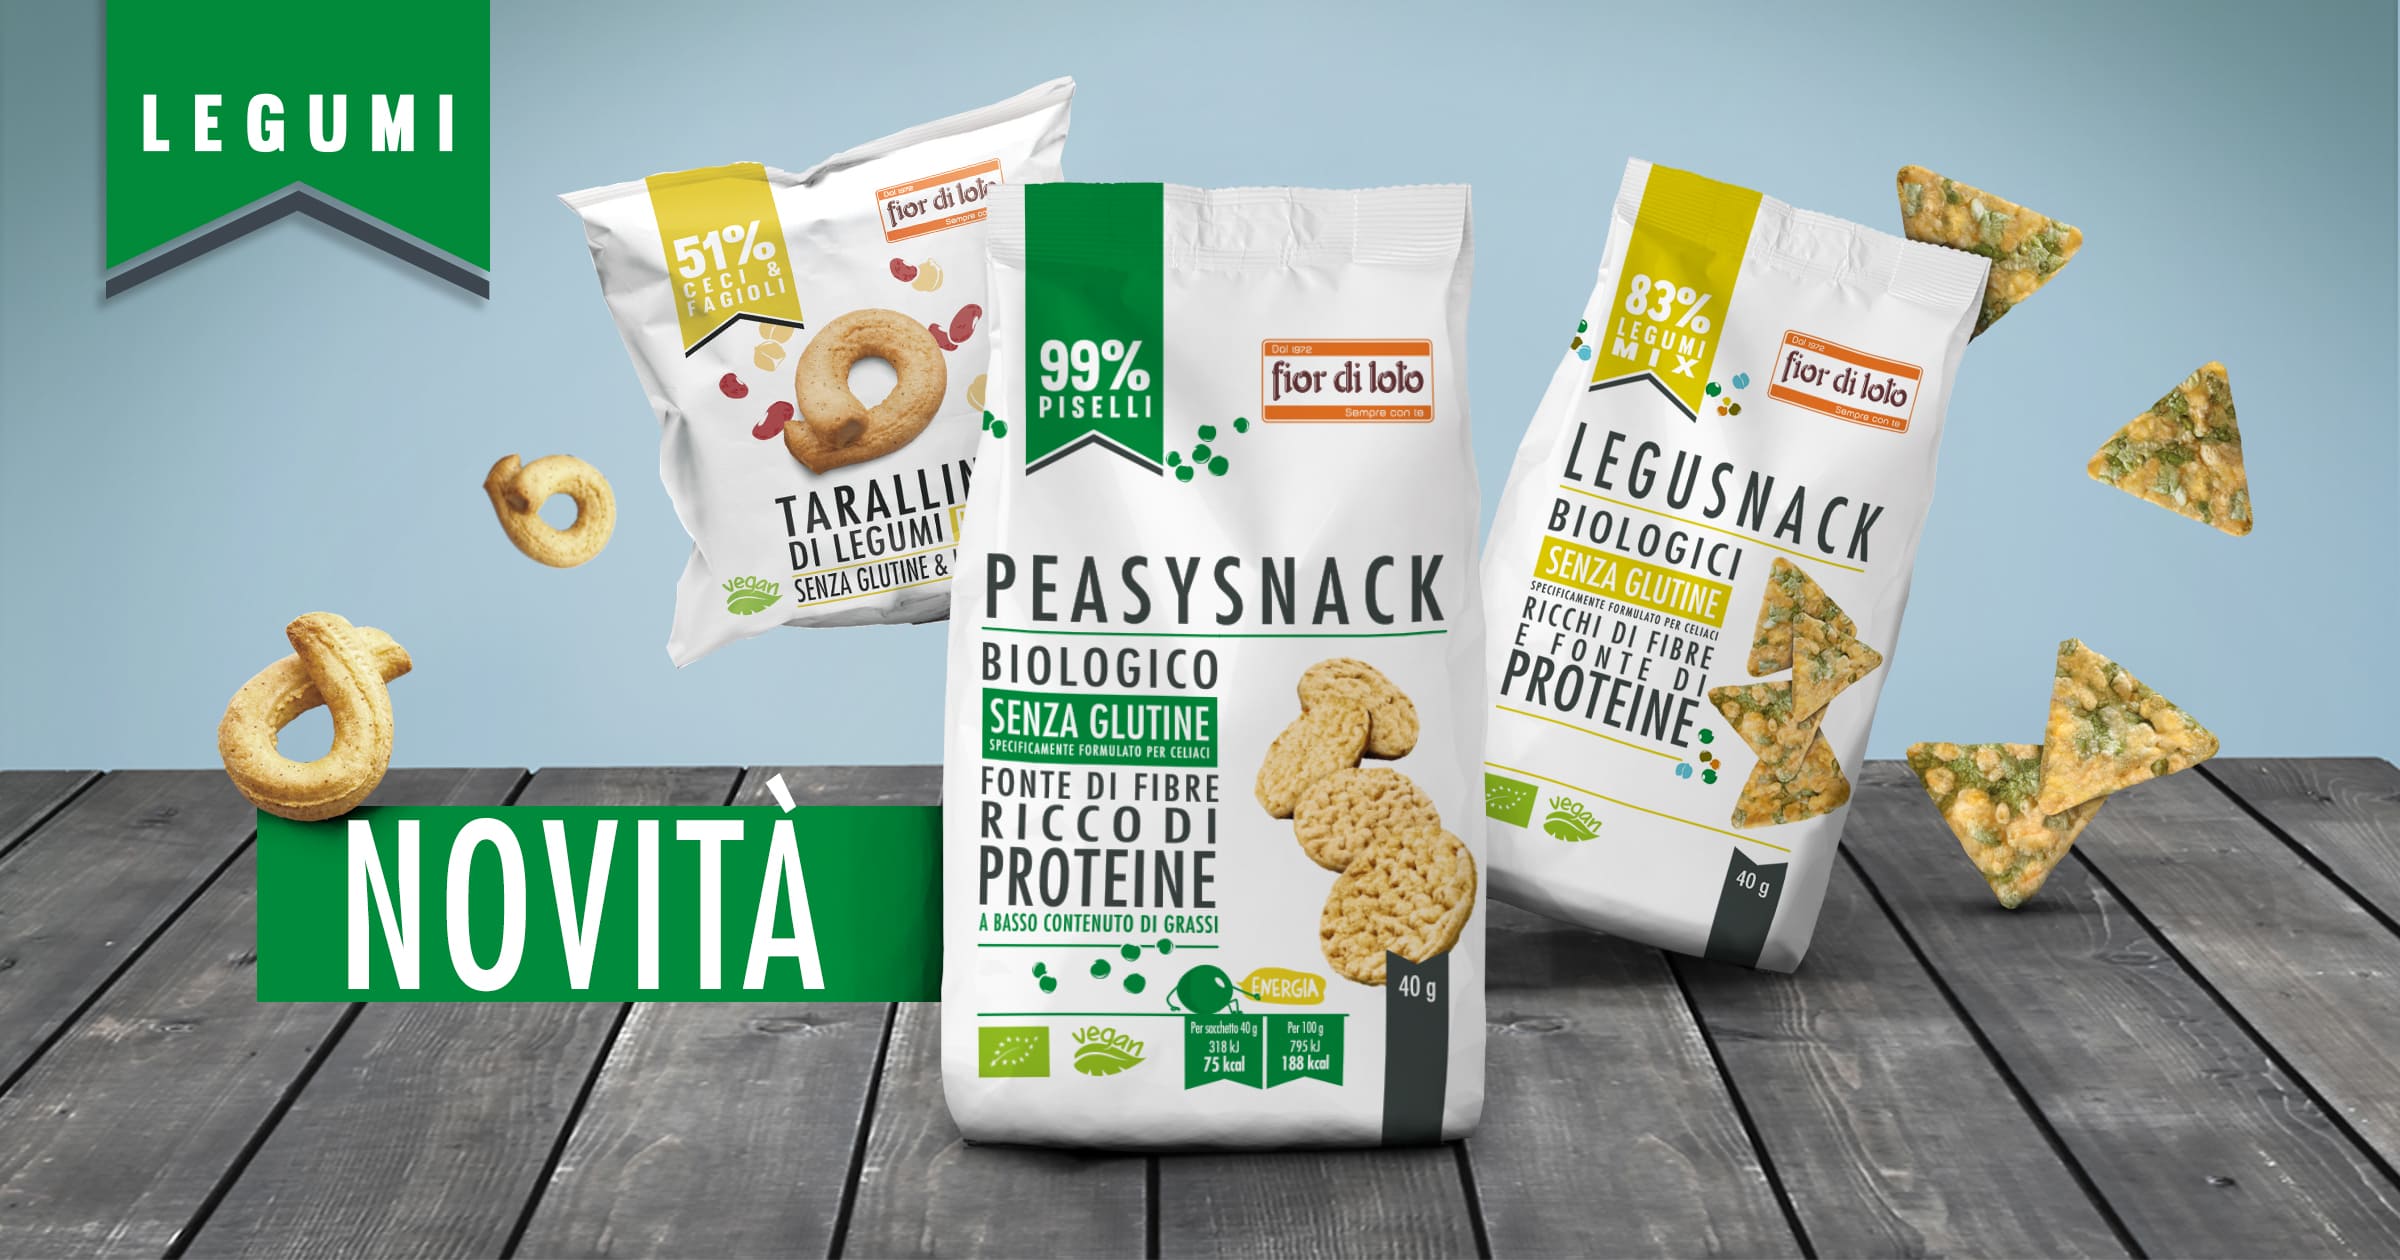 Tre snack proteici a base di legumi e una novità: i Peasysnack! 